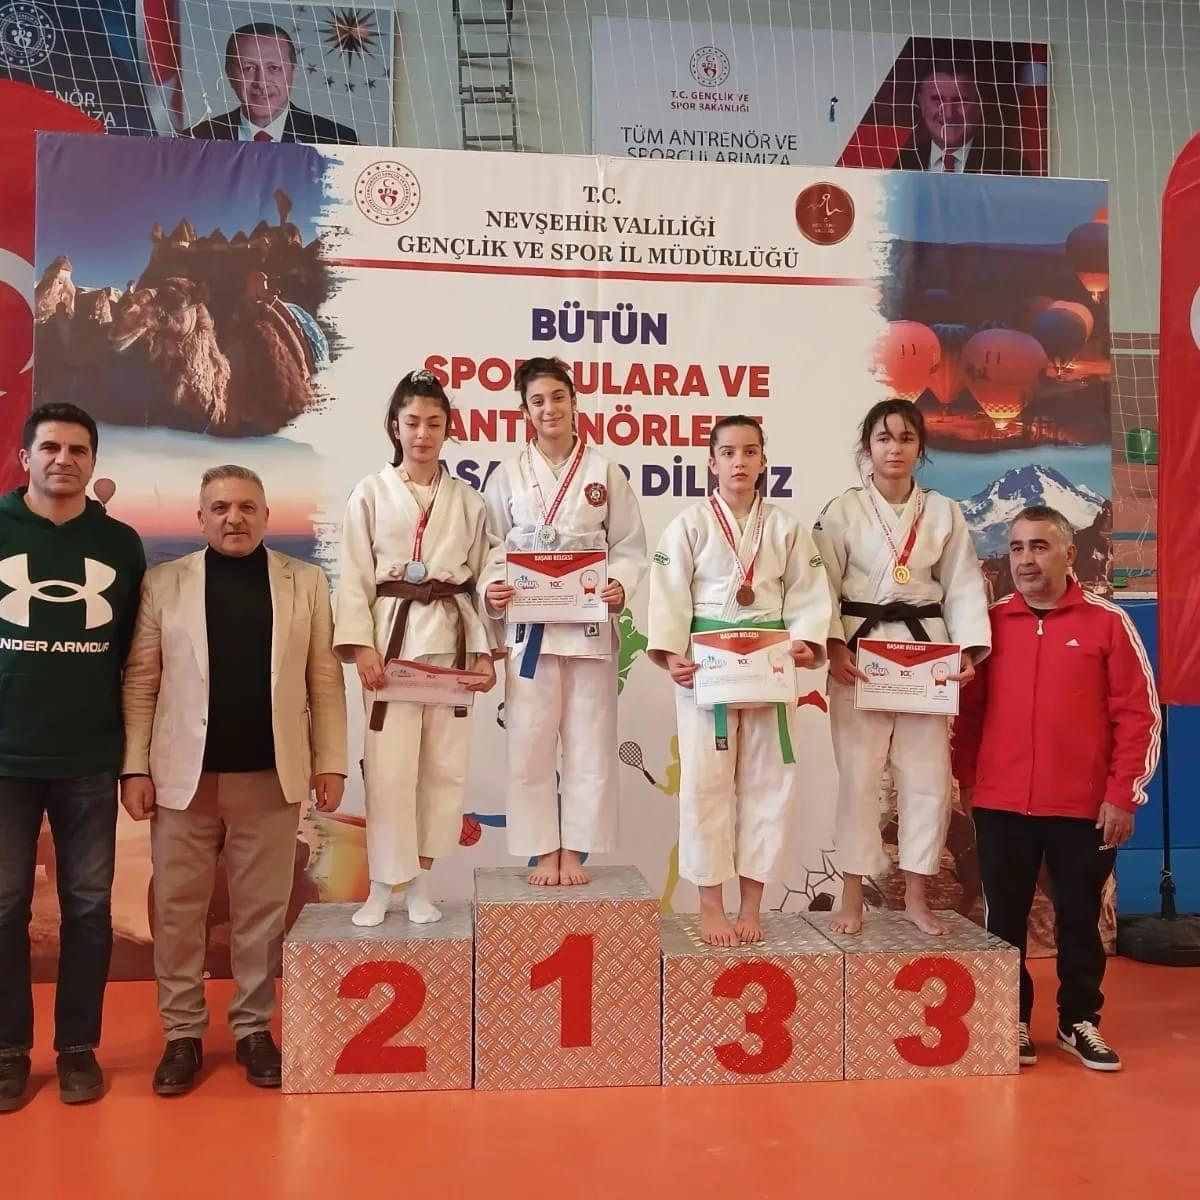 Aksaraylı genç judocular, Nevşehir’de